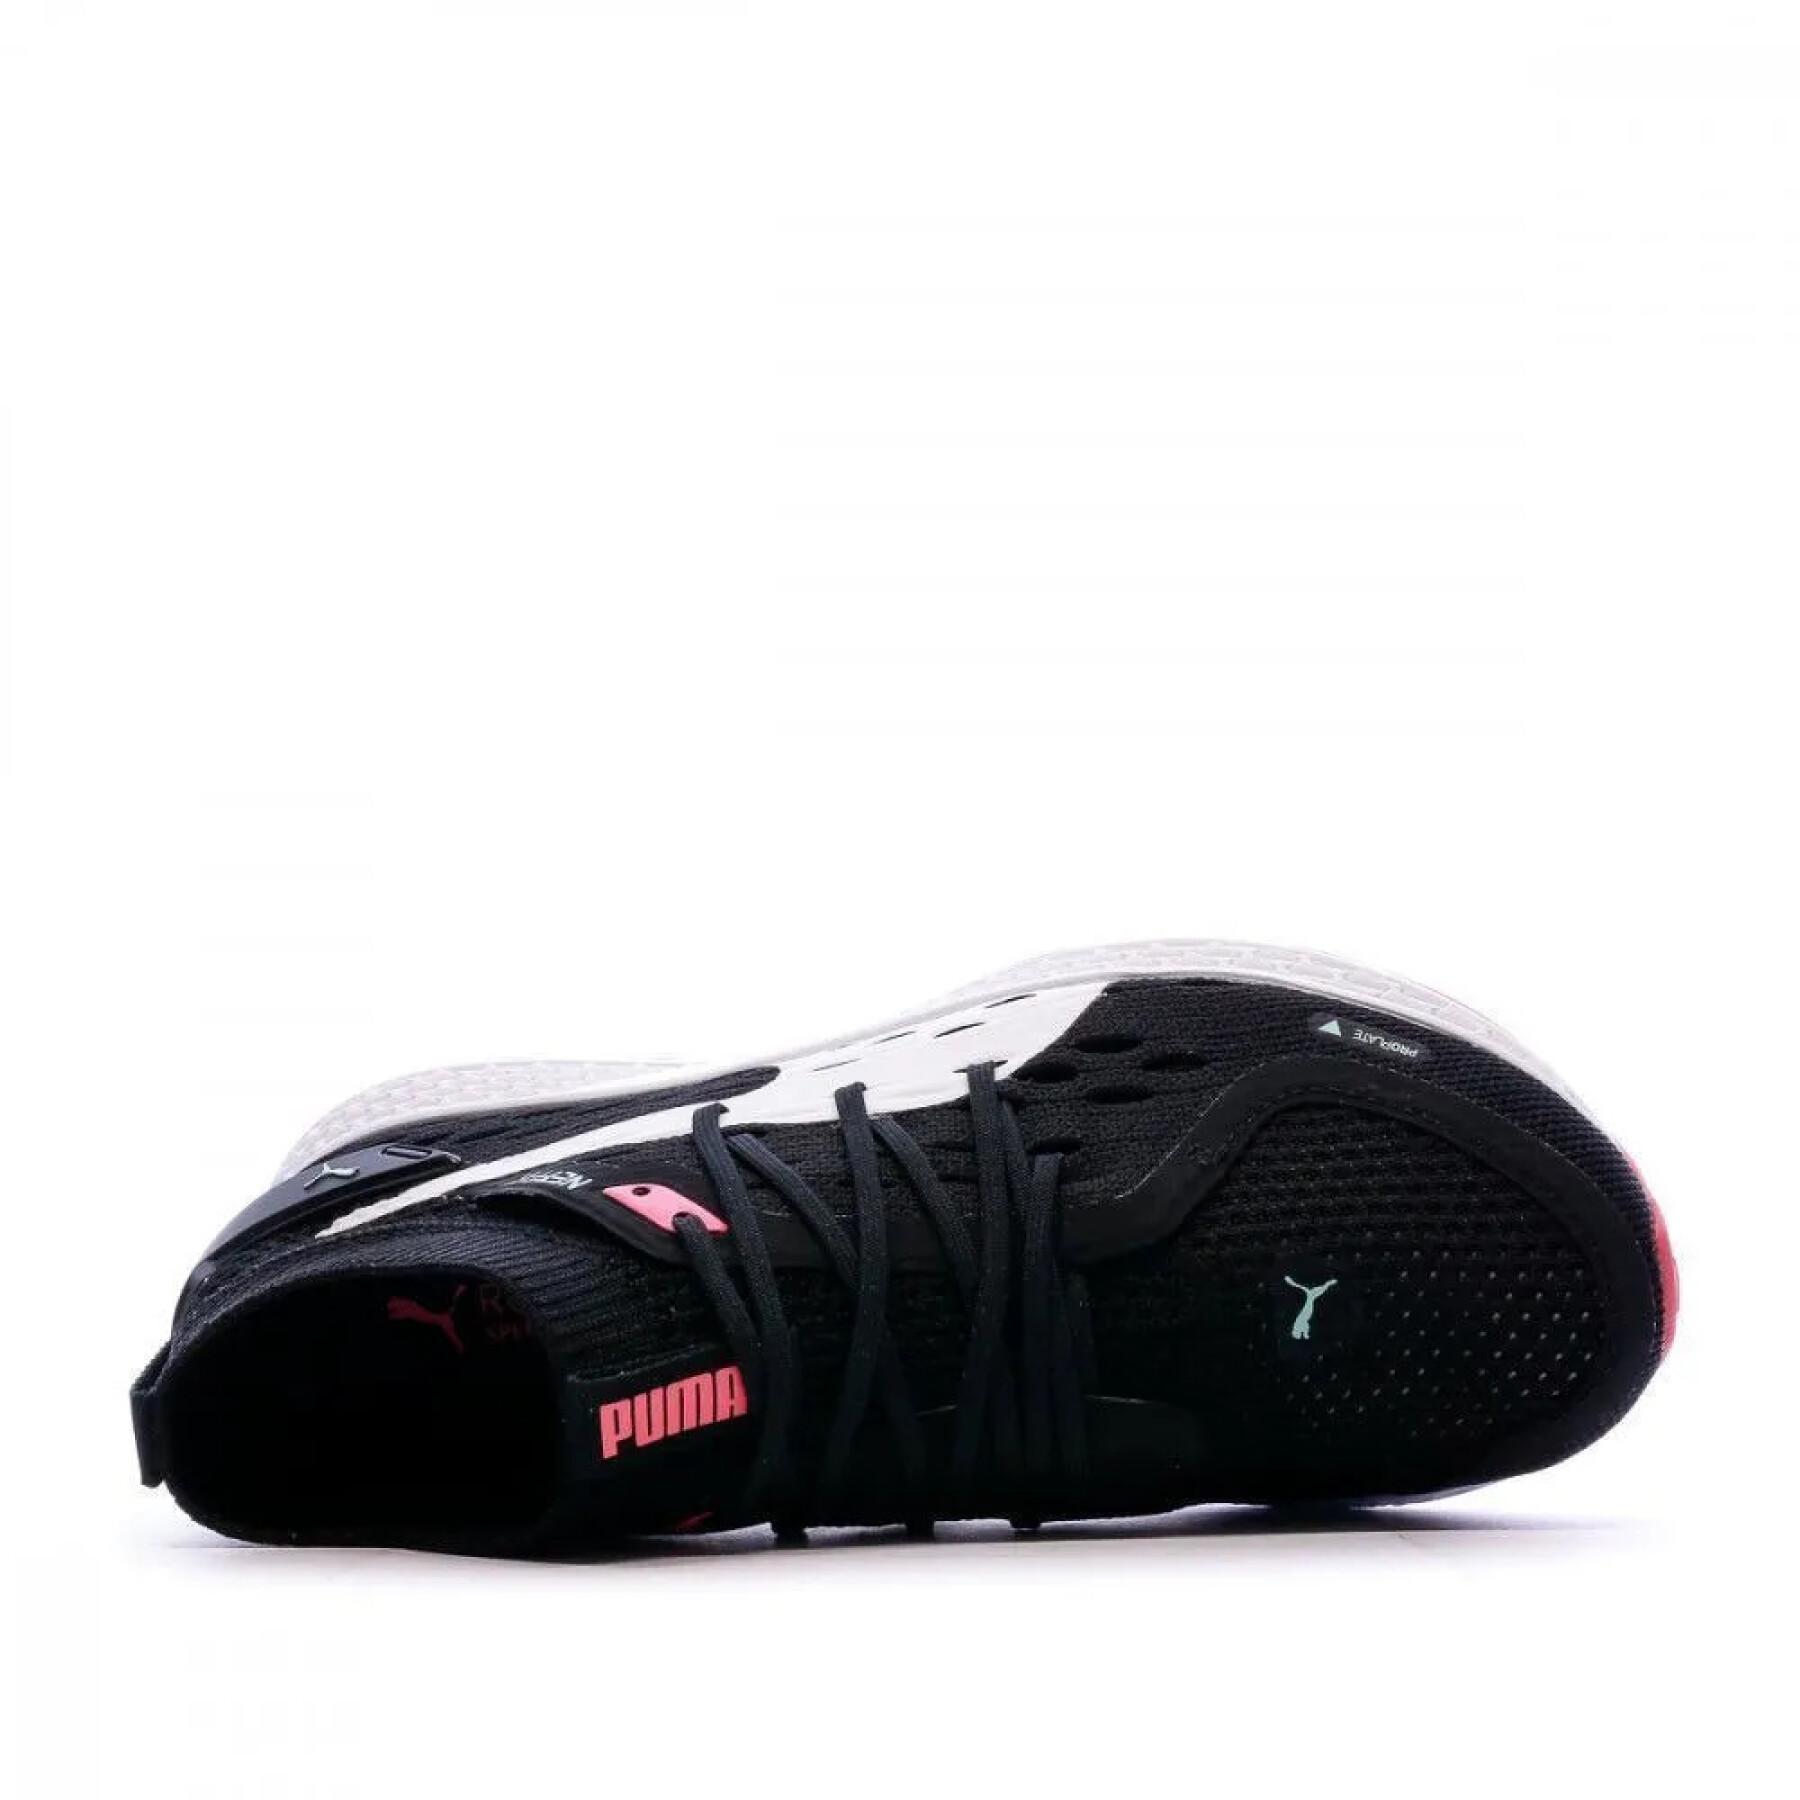 Chaussures de running femme Puma speed 500